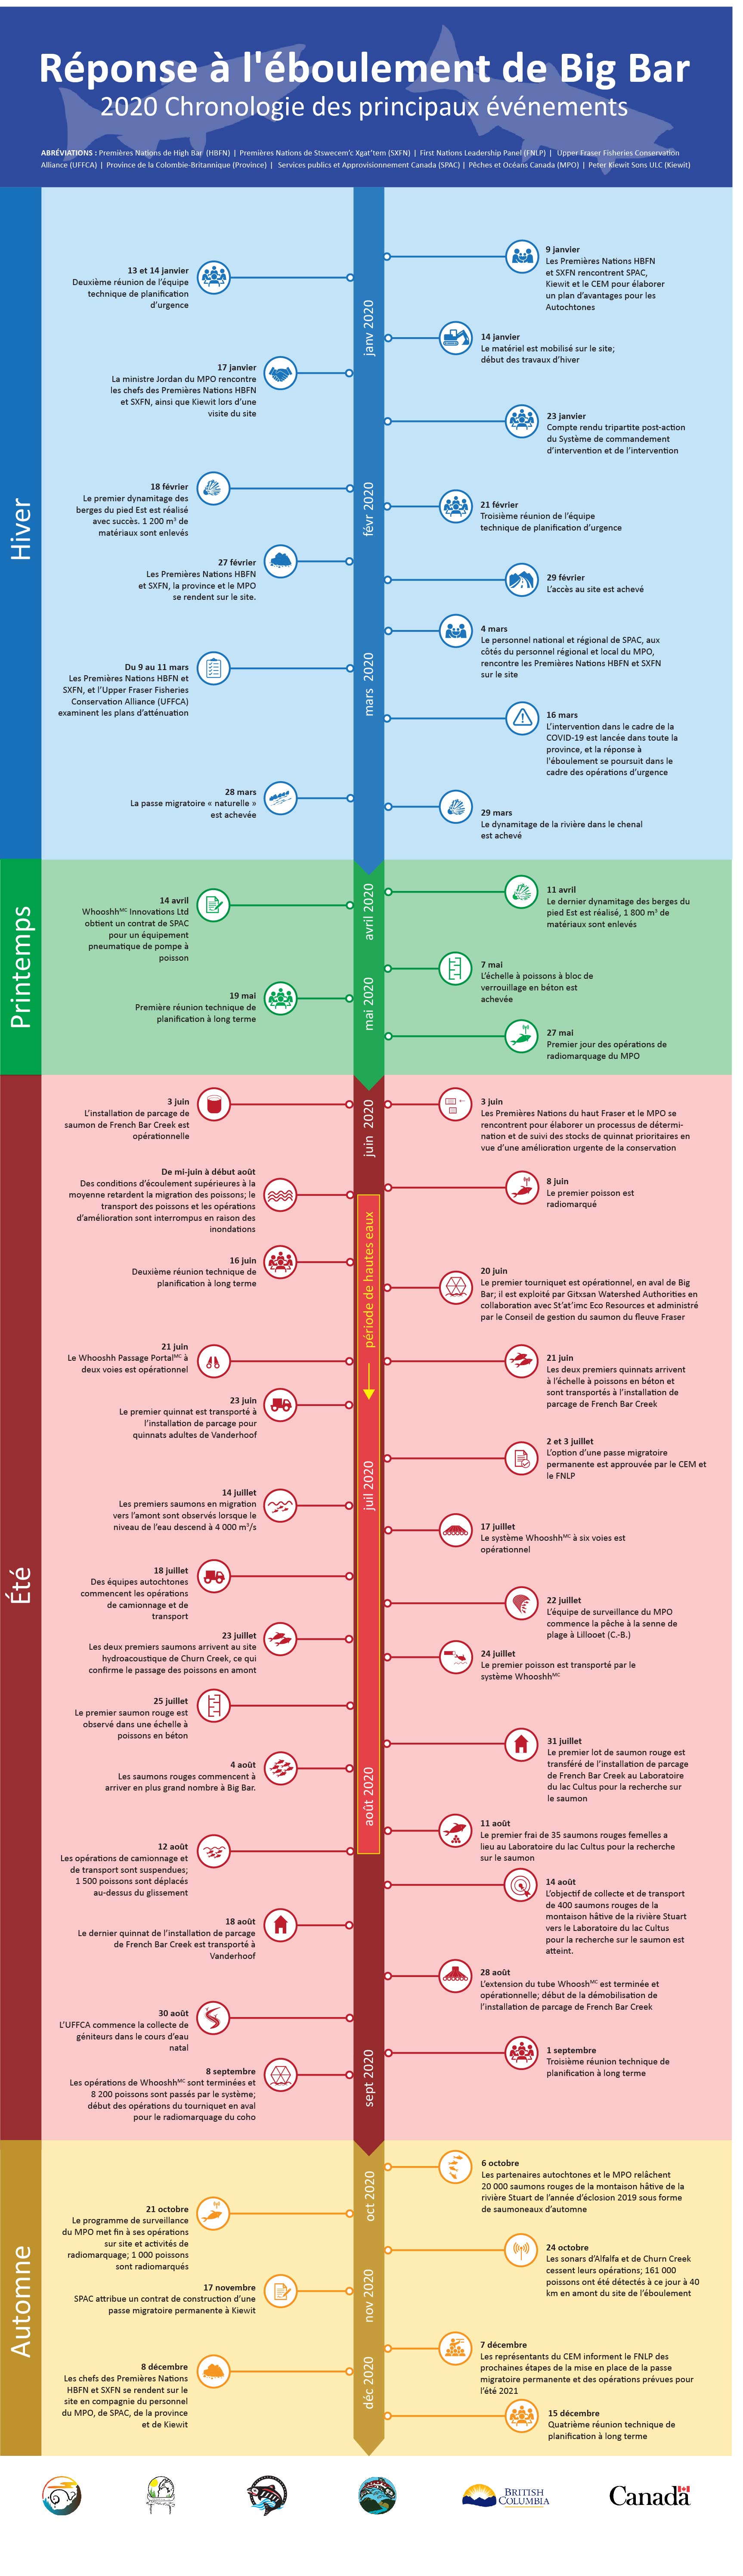 Infographie : 2020 réponse à l'éboulement de Big Bar chronologie des principaux événements